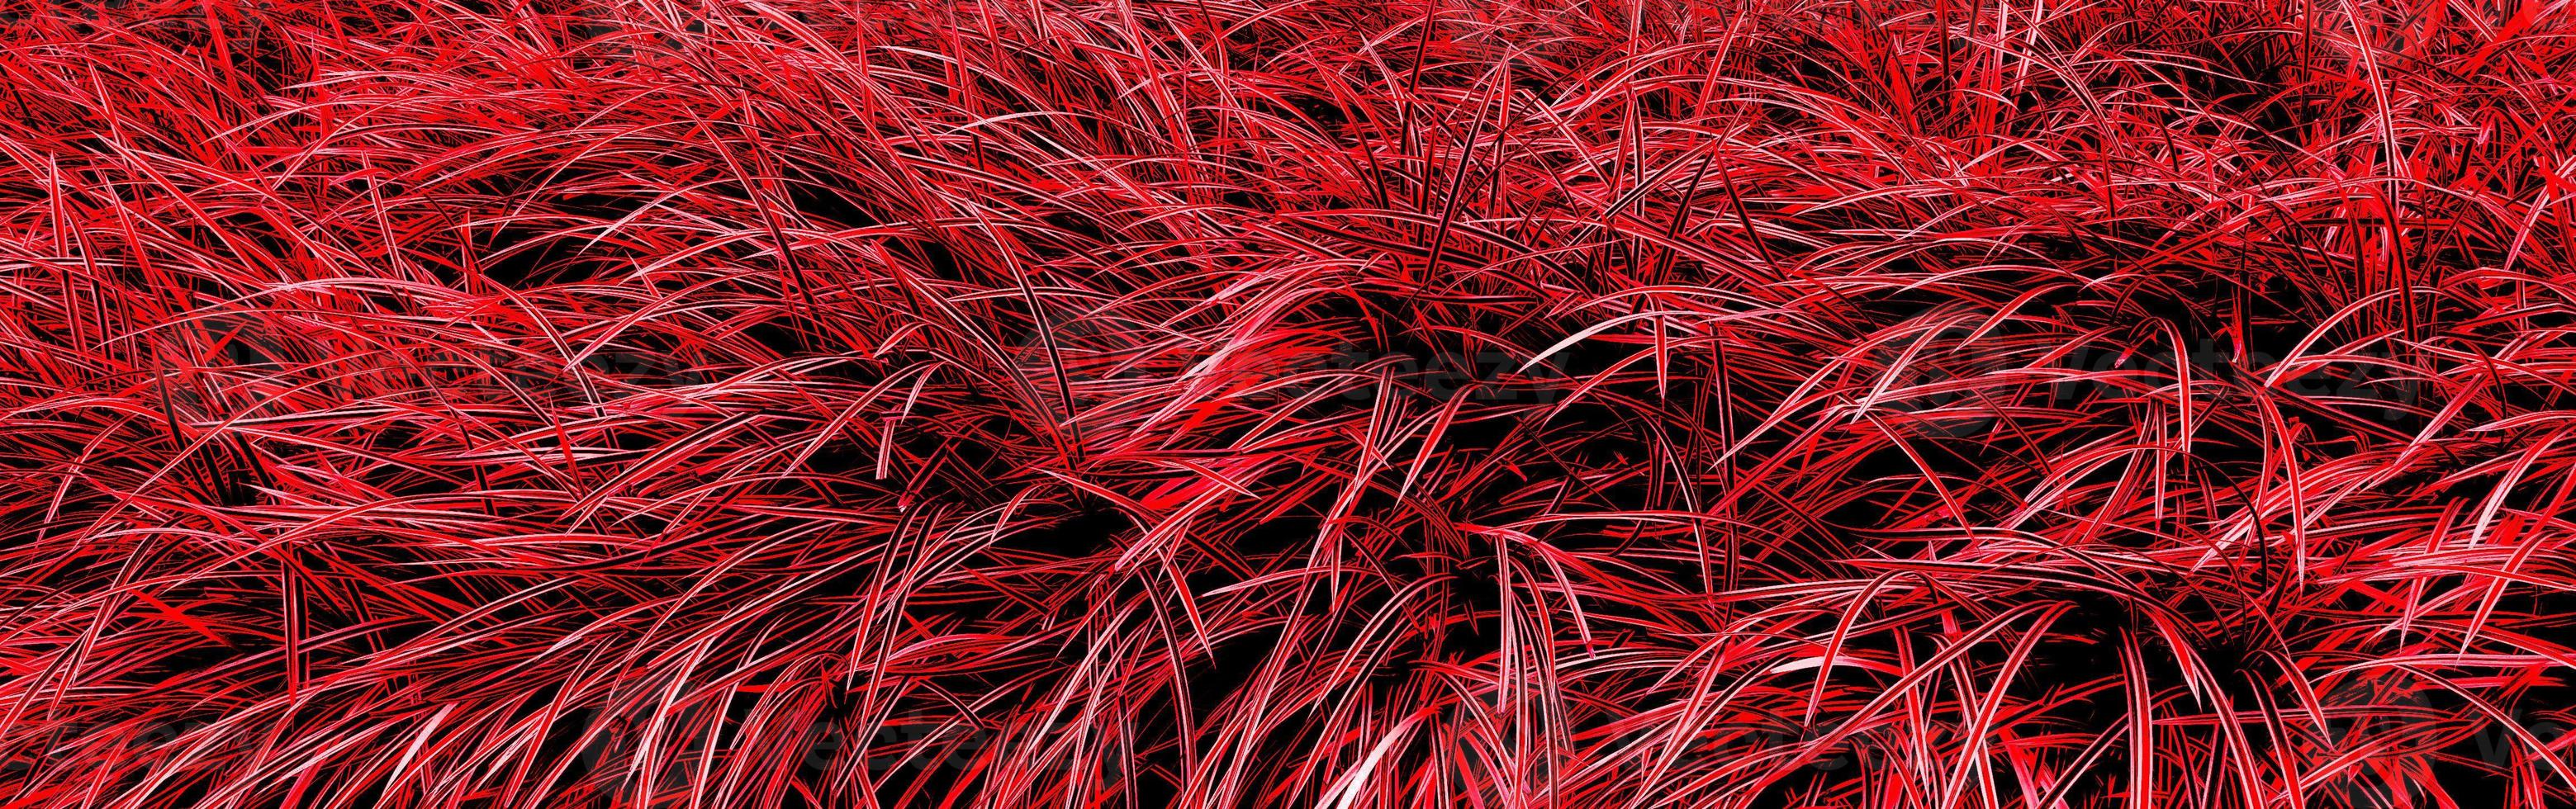 fond de texture d'herbe rouge photo